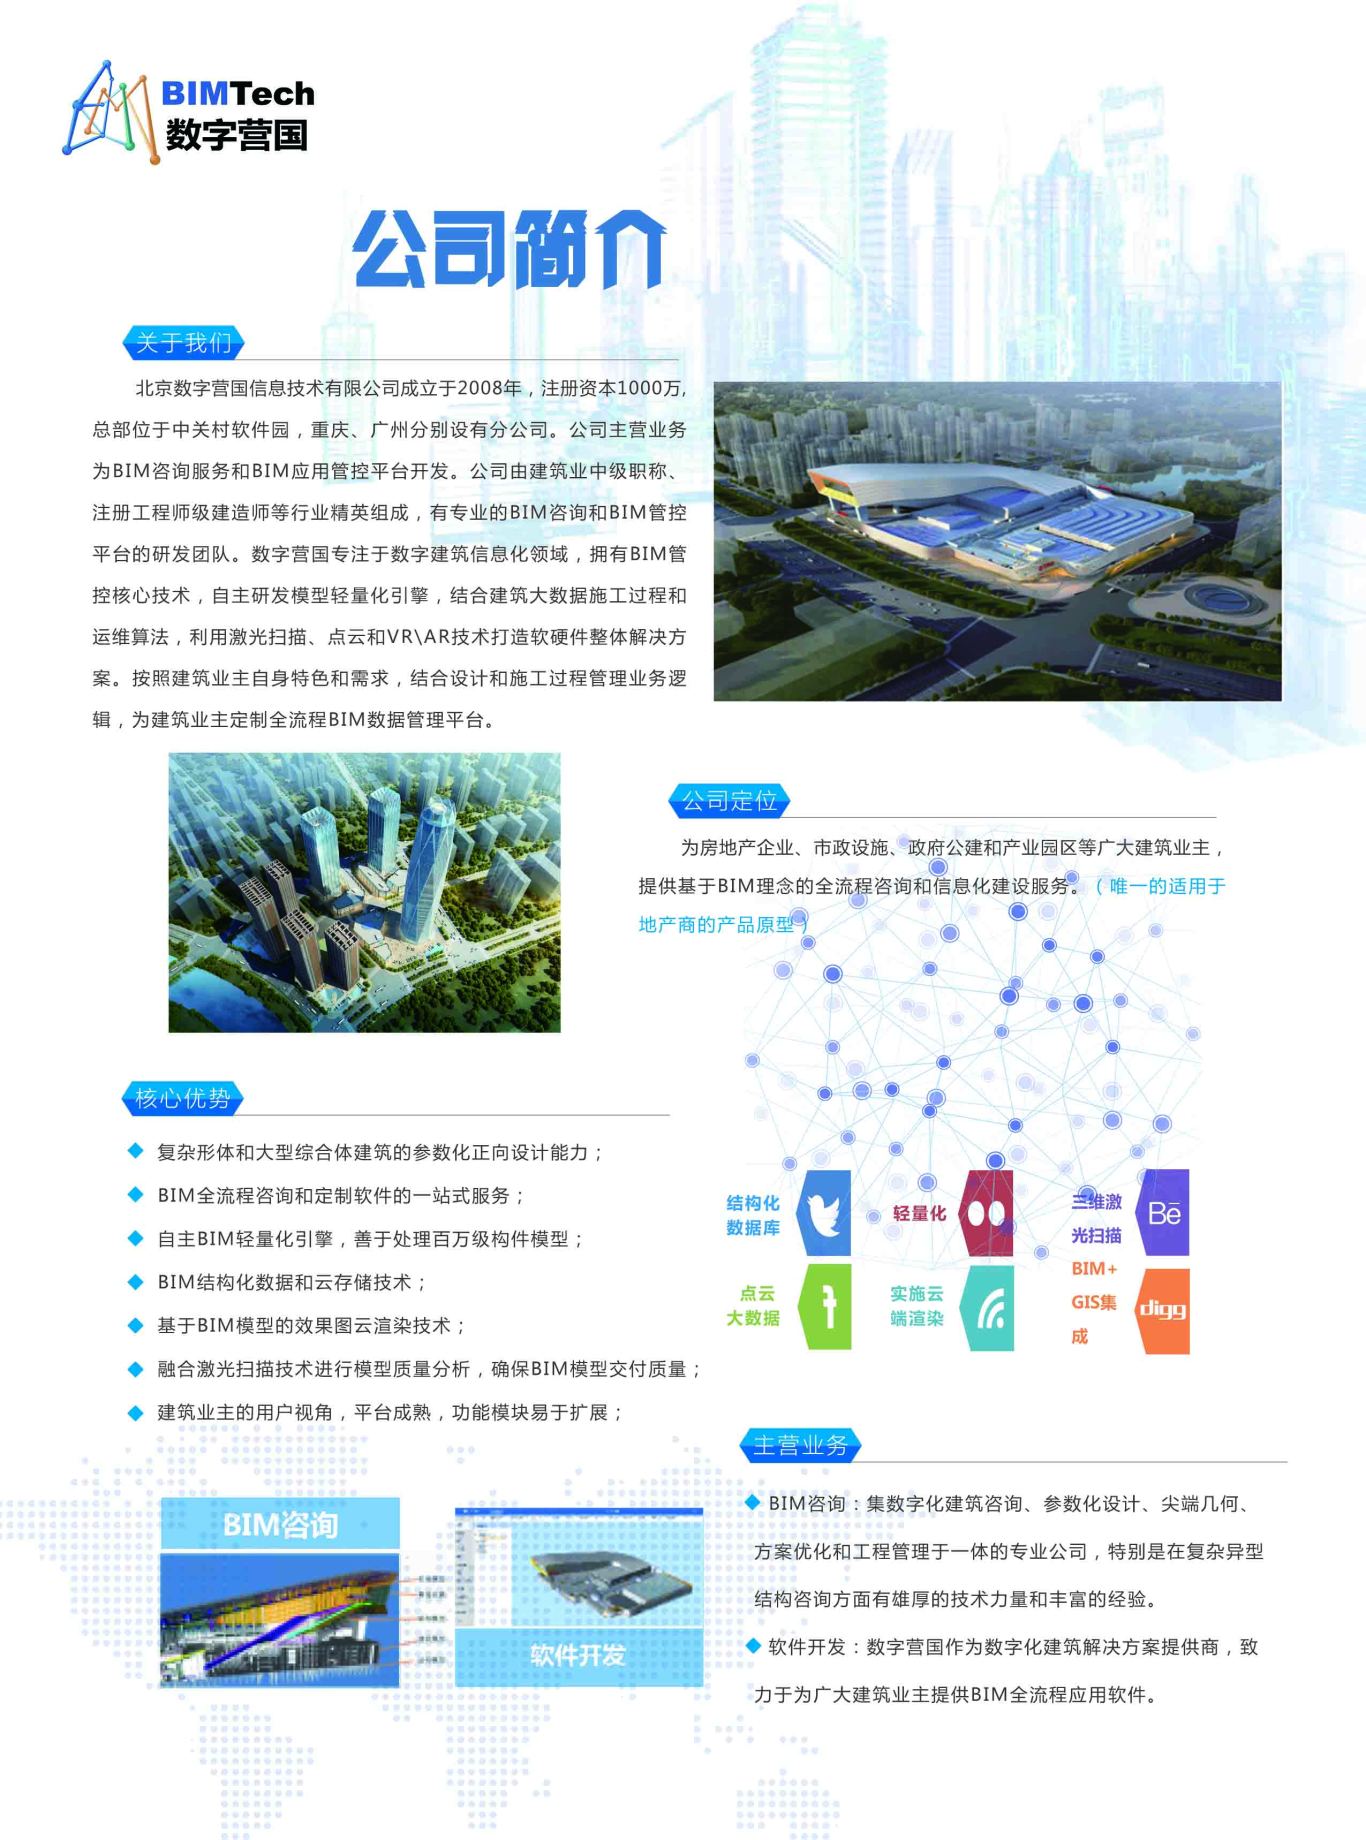 北京数字营国项目宣传单设计图1